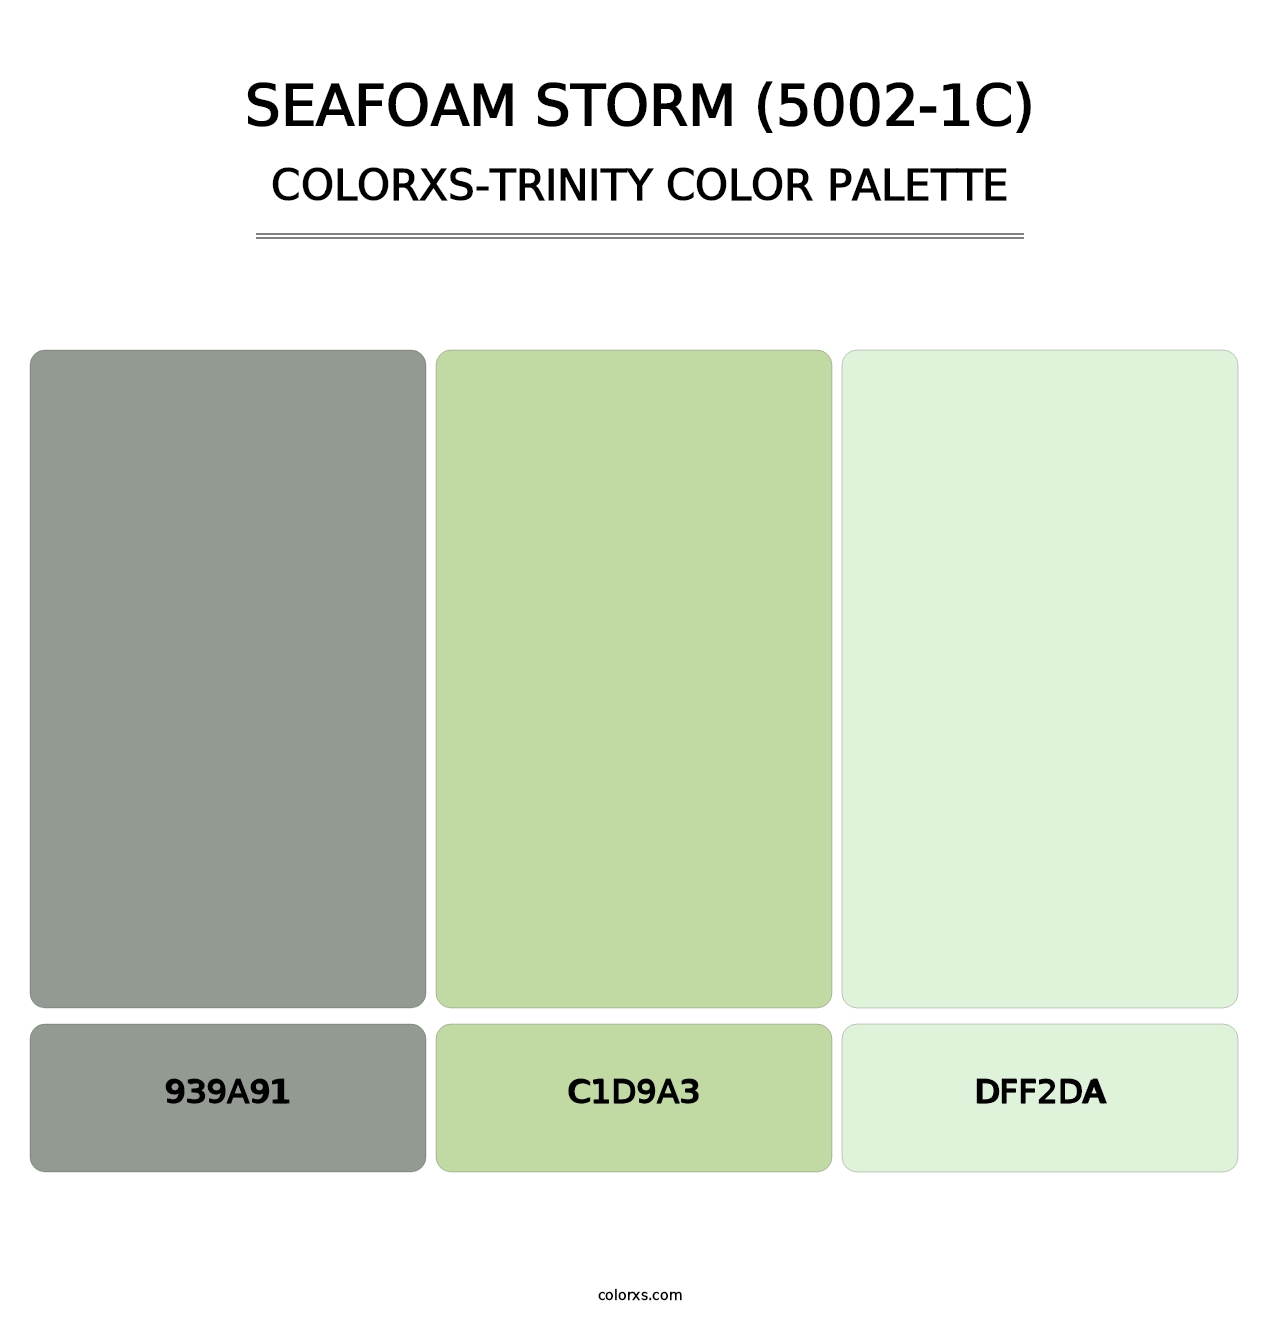 Seafoam Storm (5002-1C) - Colorxs Trinity Palette